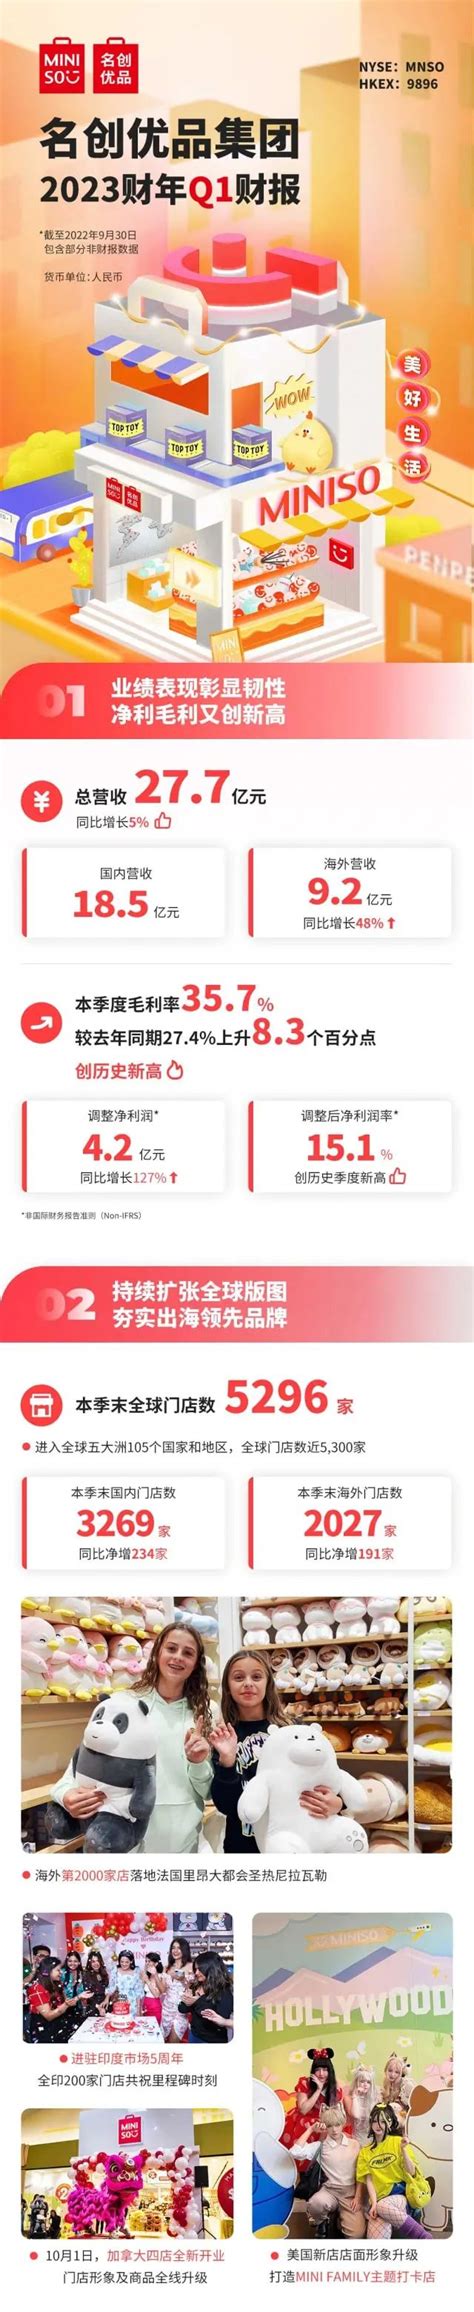 一图速览名创优品集团2023财年Q1财报-广东省电子商务协会